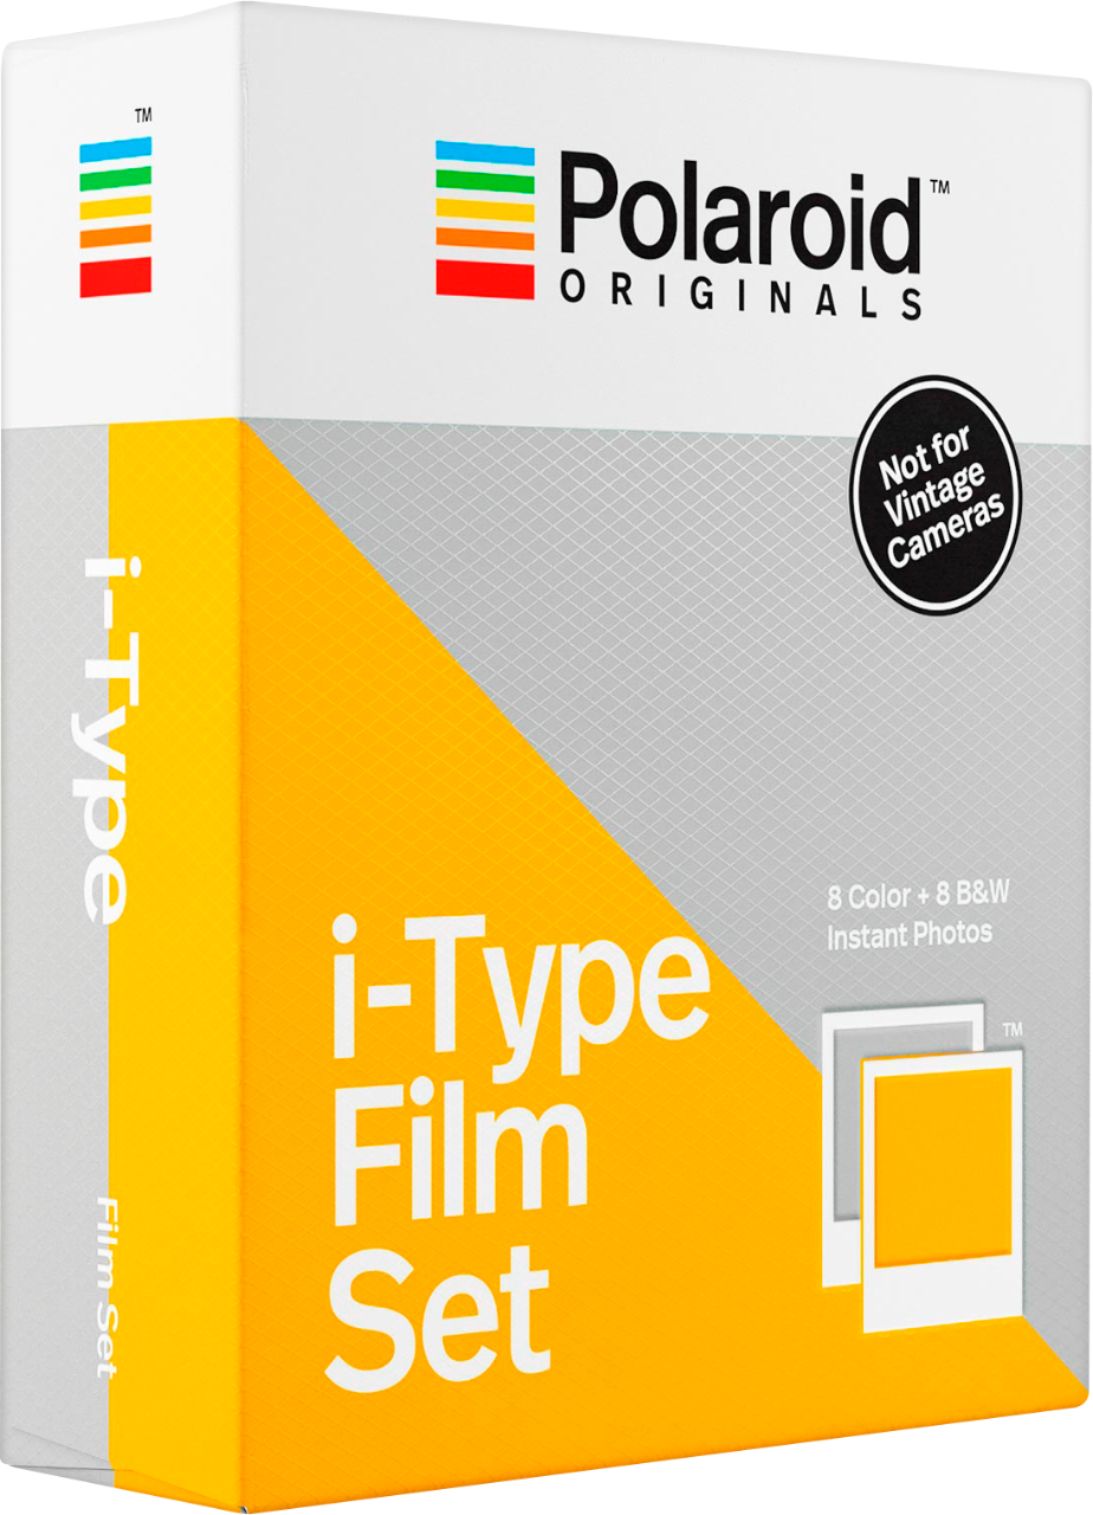 Polaroid Black & White 6001 Film for I-Type Pack of 2 8 Photos ea Total 16 